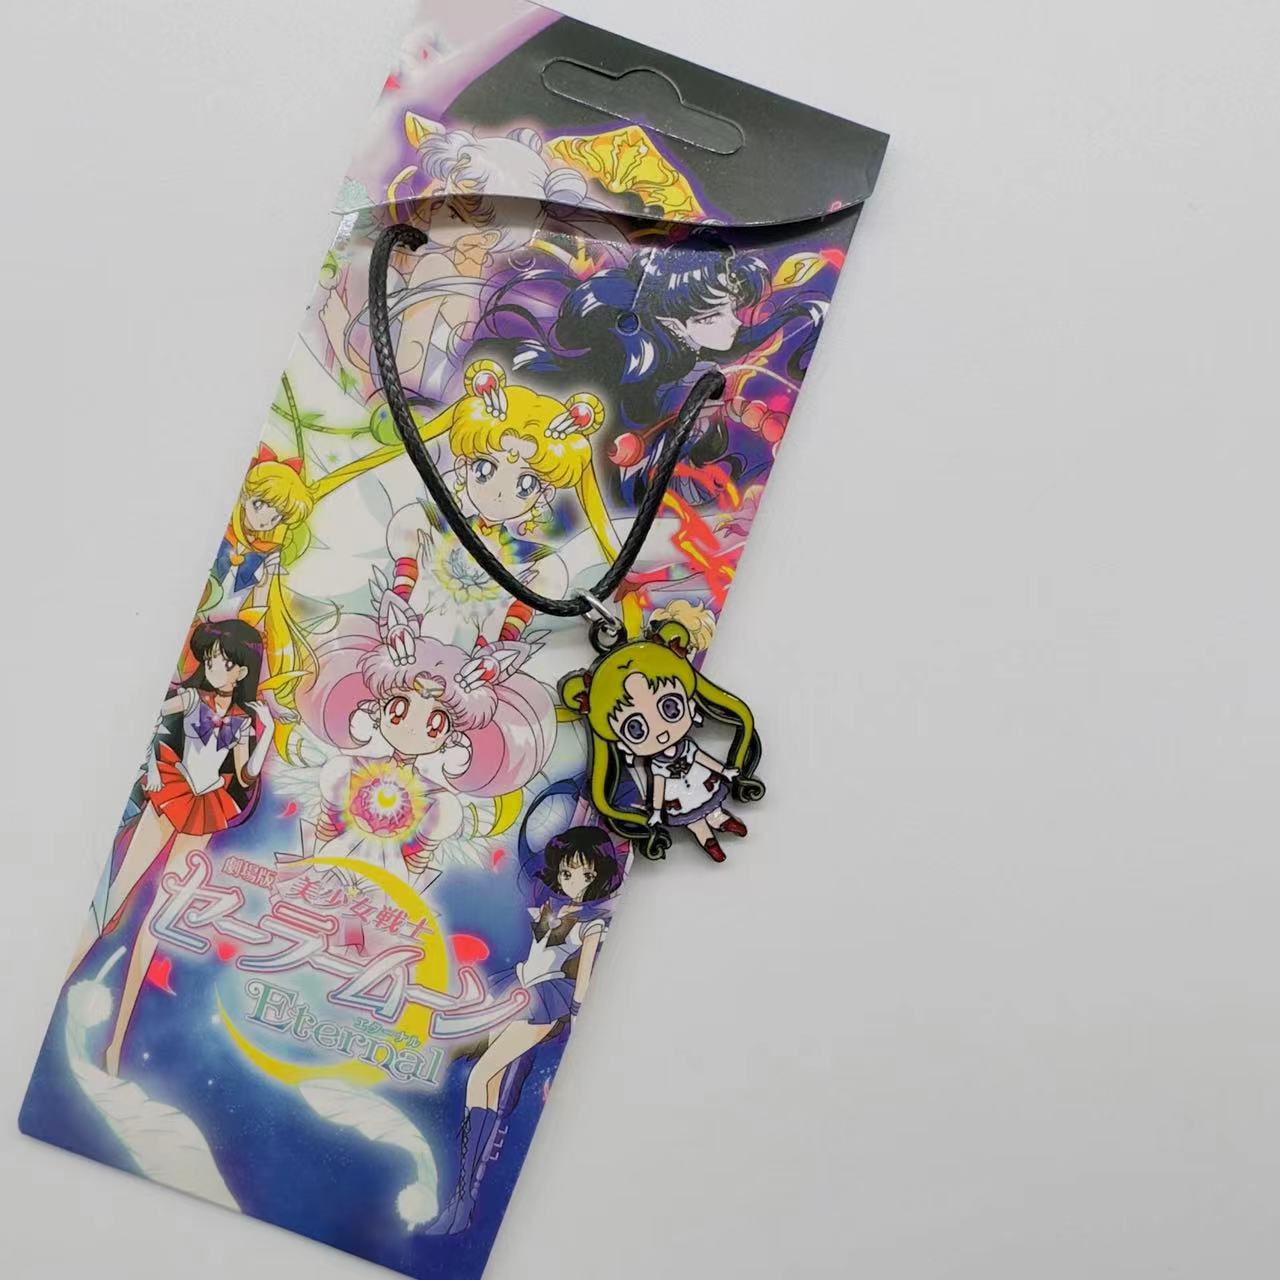 Sailor Moon Crystal anime necklace